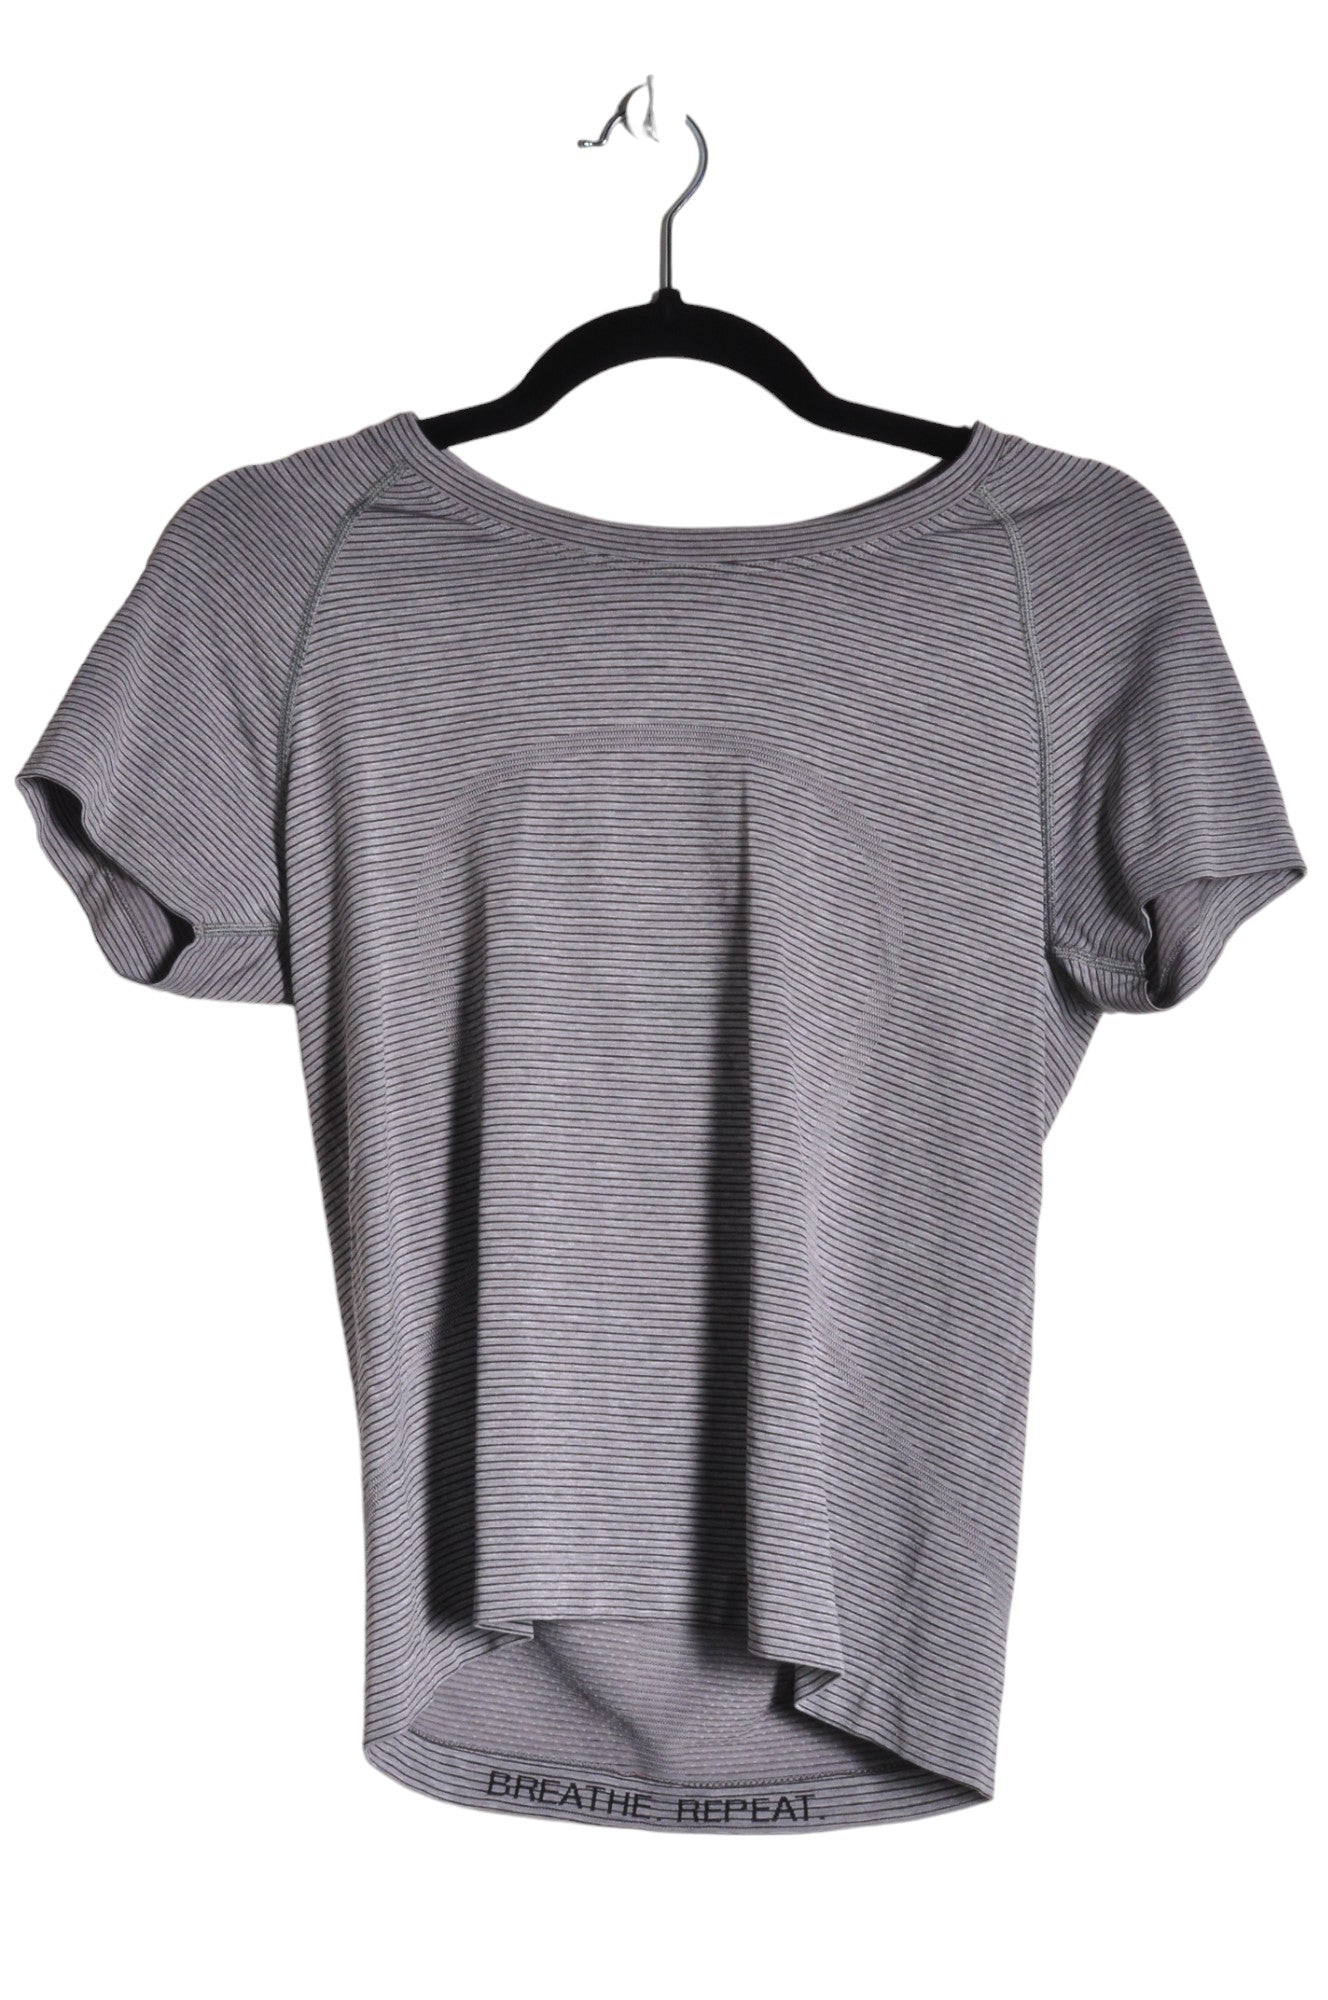 LULULEMON Women Activewear Tops Regular fit in Gray - Size S | 39.2 $ KOOP